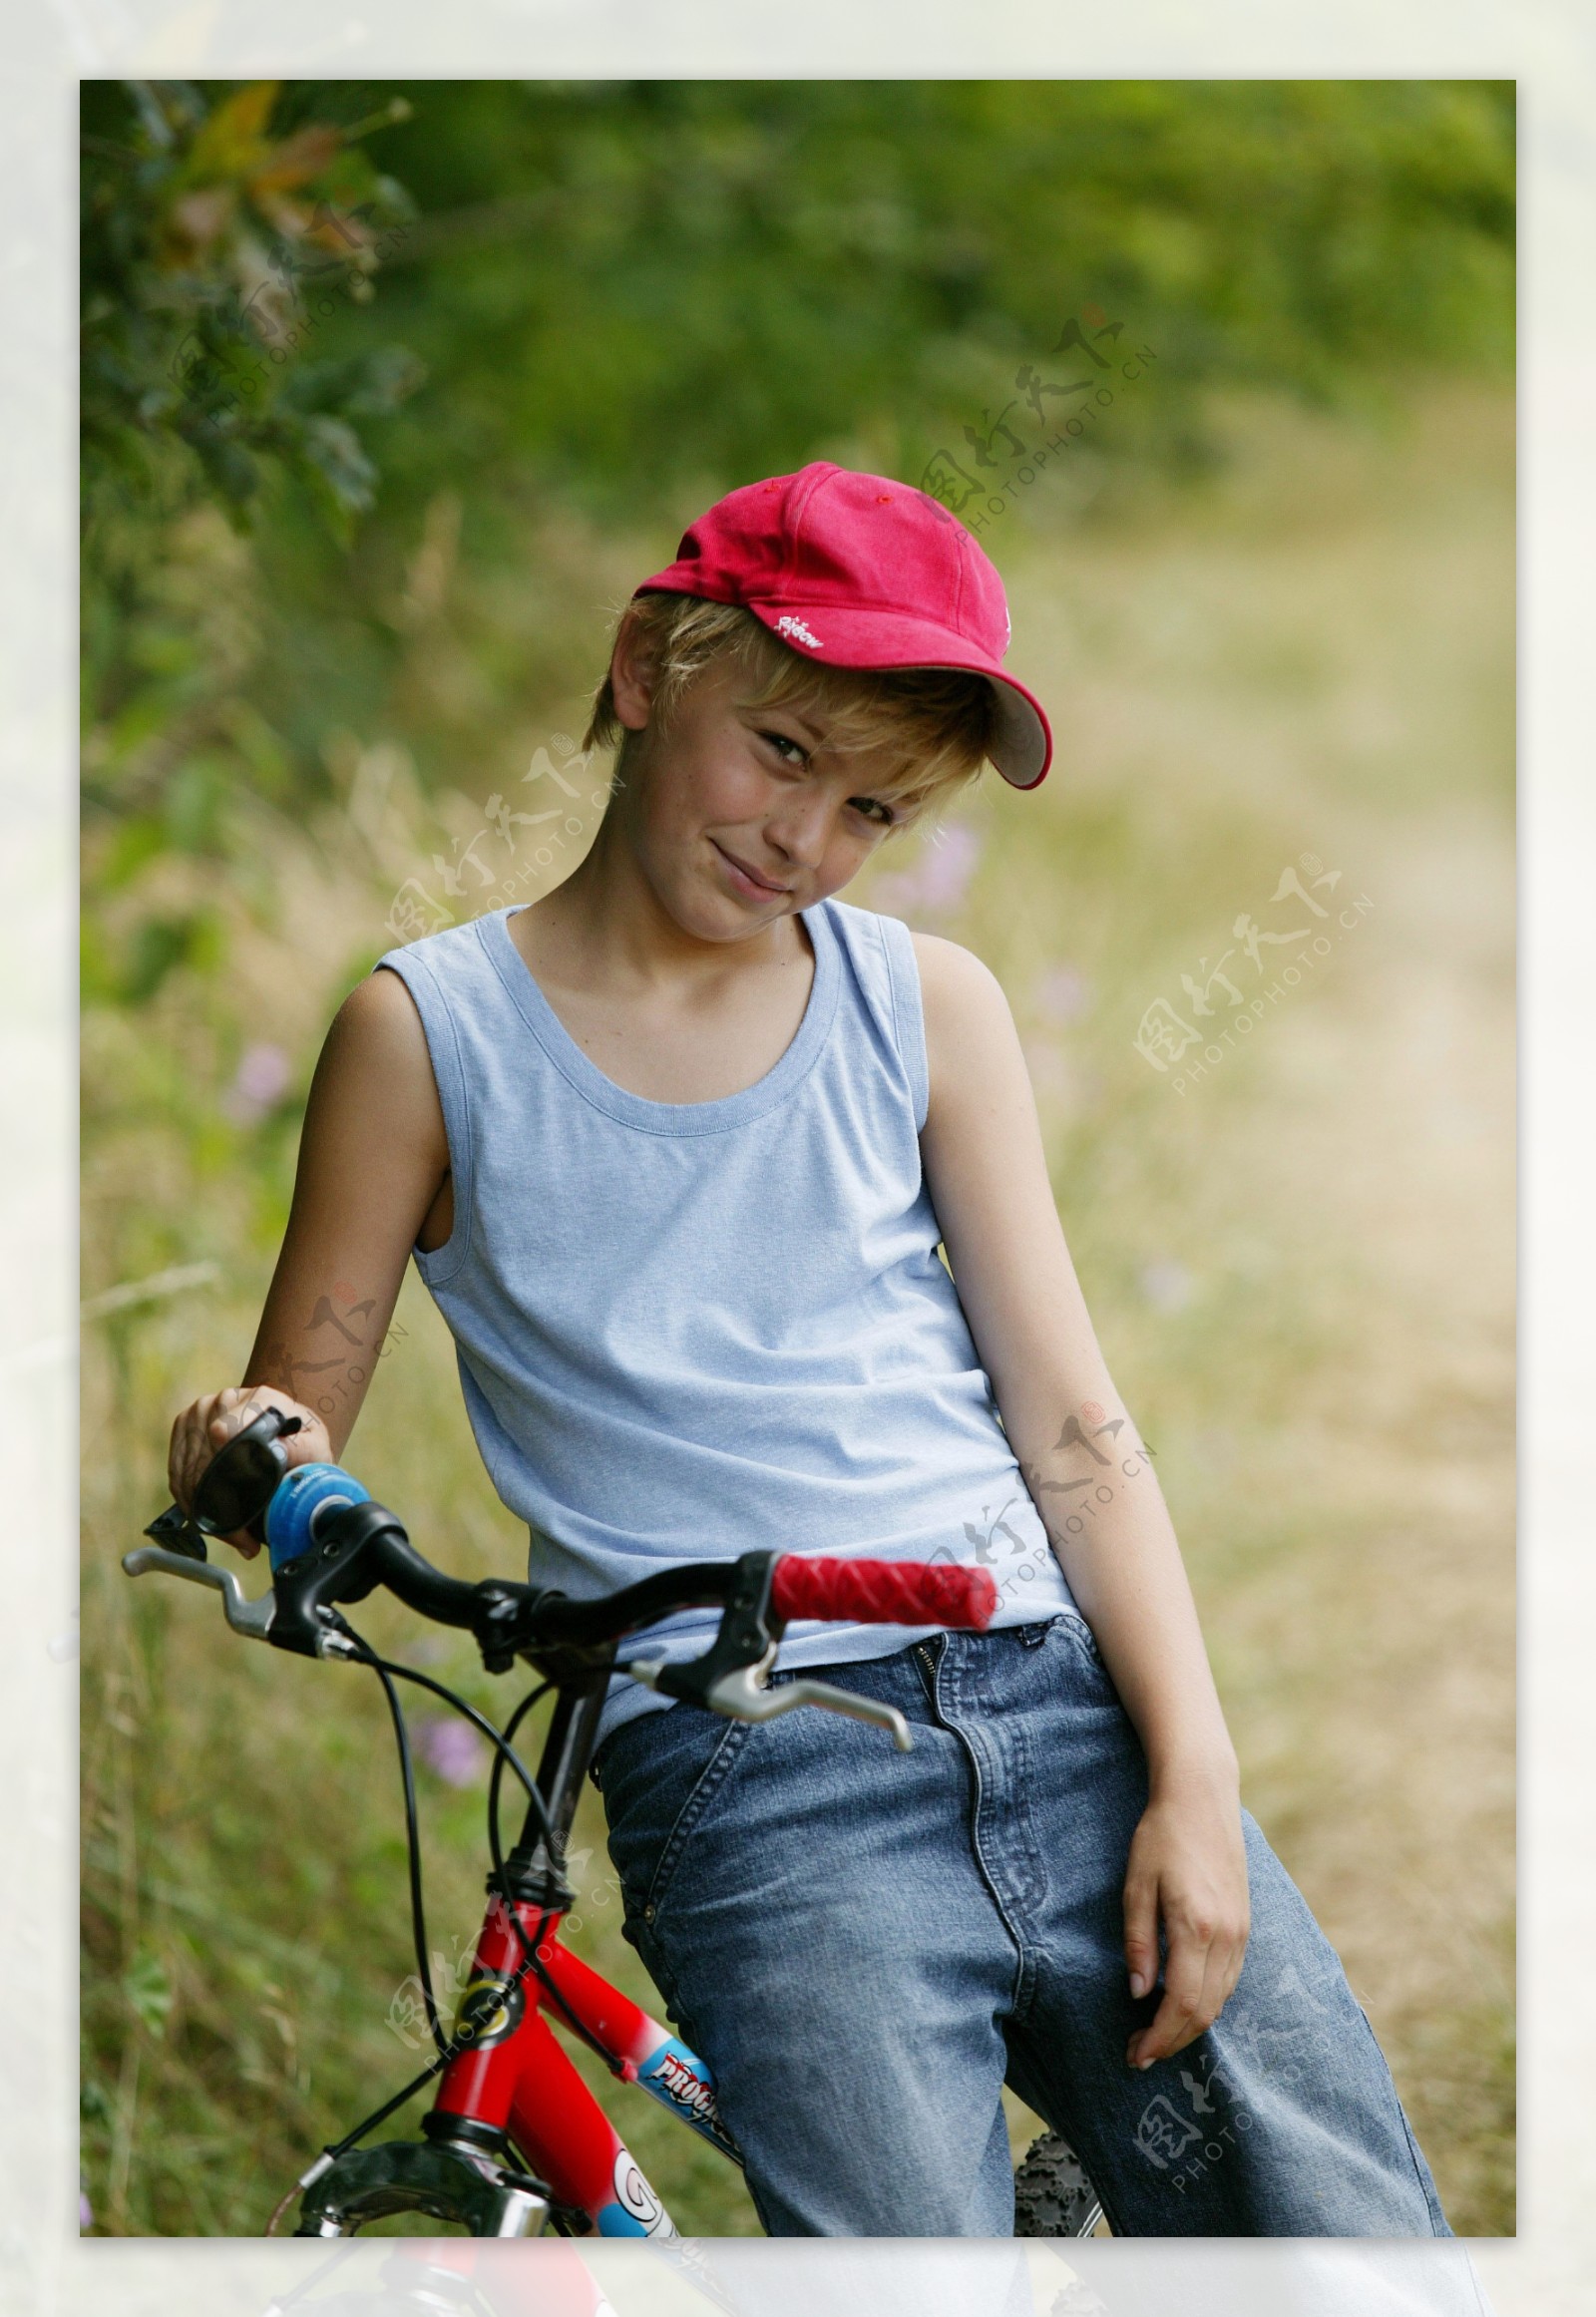 骑单车的男孩图片